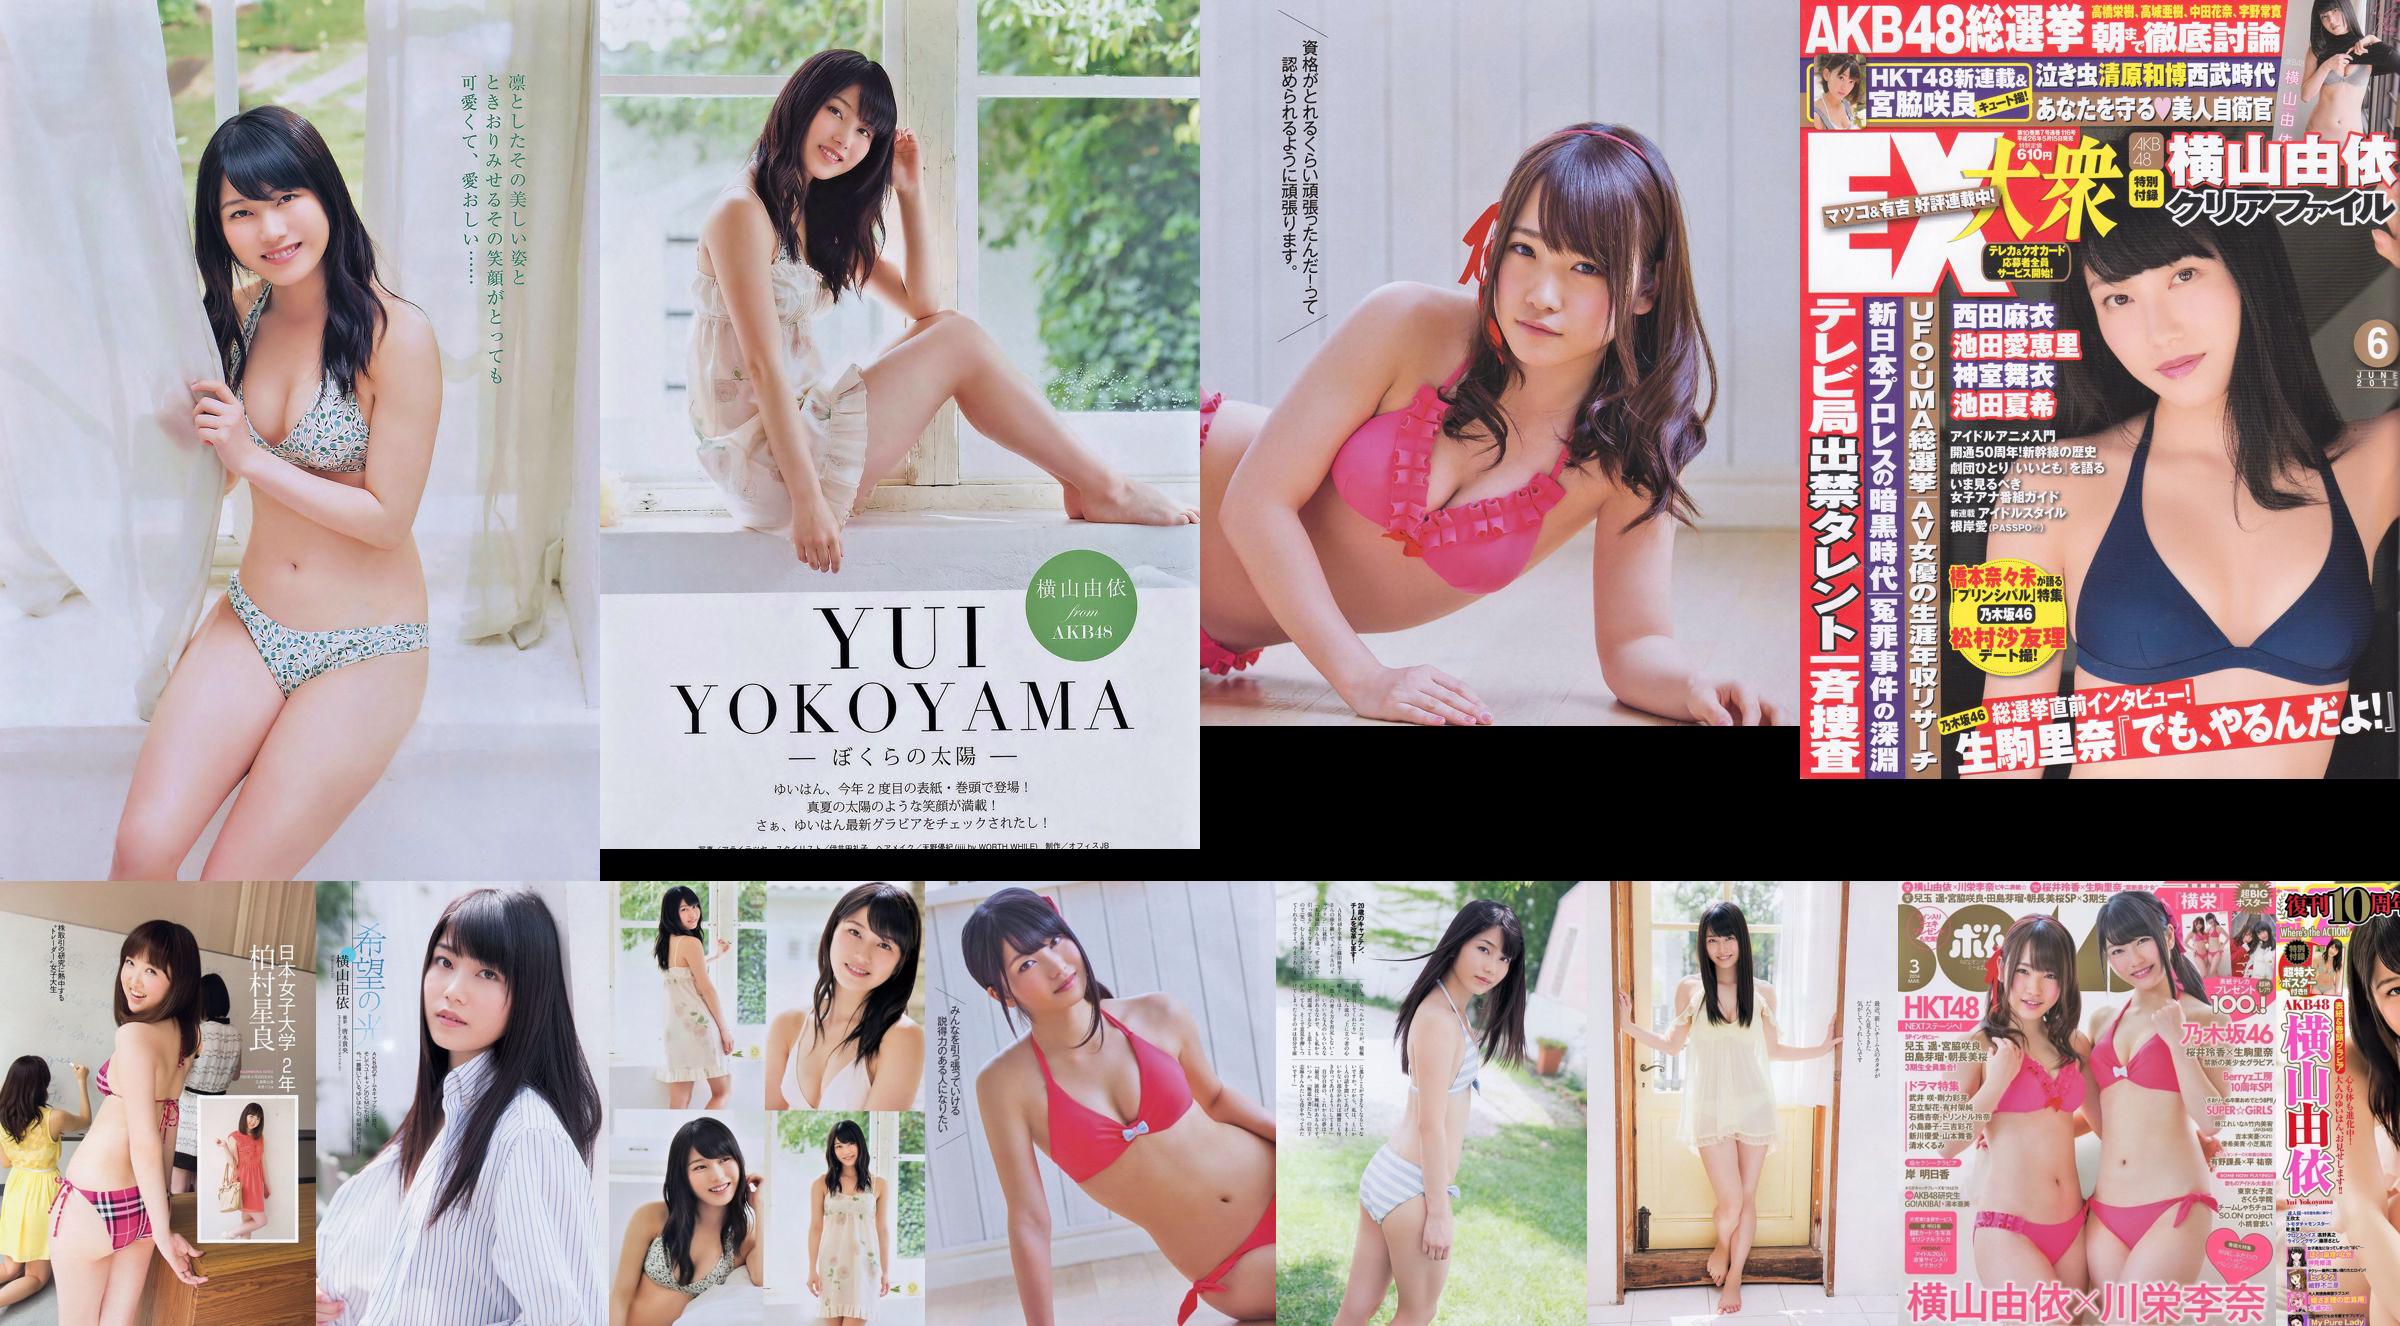 Momoiro Clover Z Yui Yokoyama Yua Shinkawa Mio Uema Anri Sugihara Kumi Yagami [Weekly Playboy] 2013 No.20 Photo Moshi No.8dbe99 Страница 9